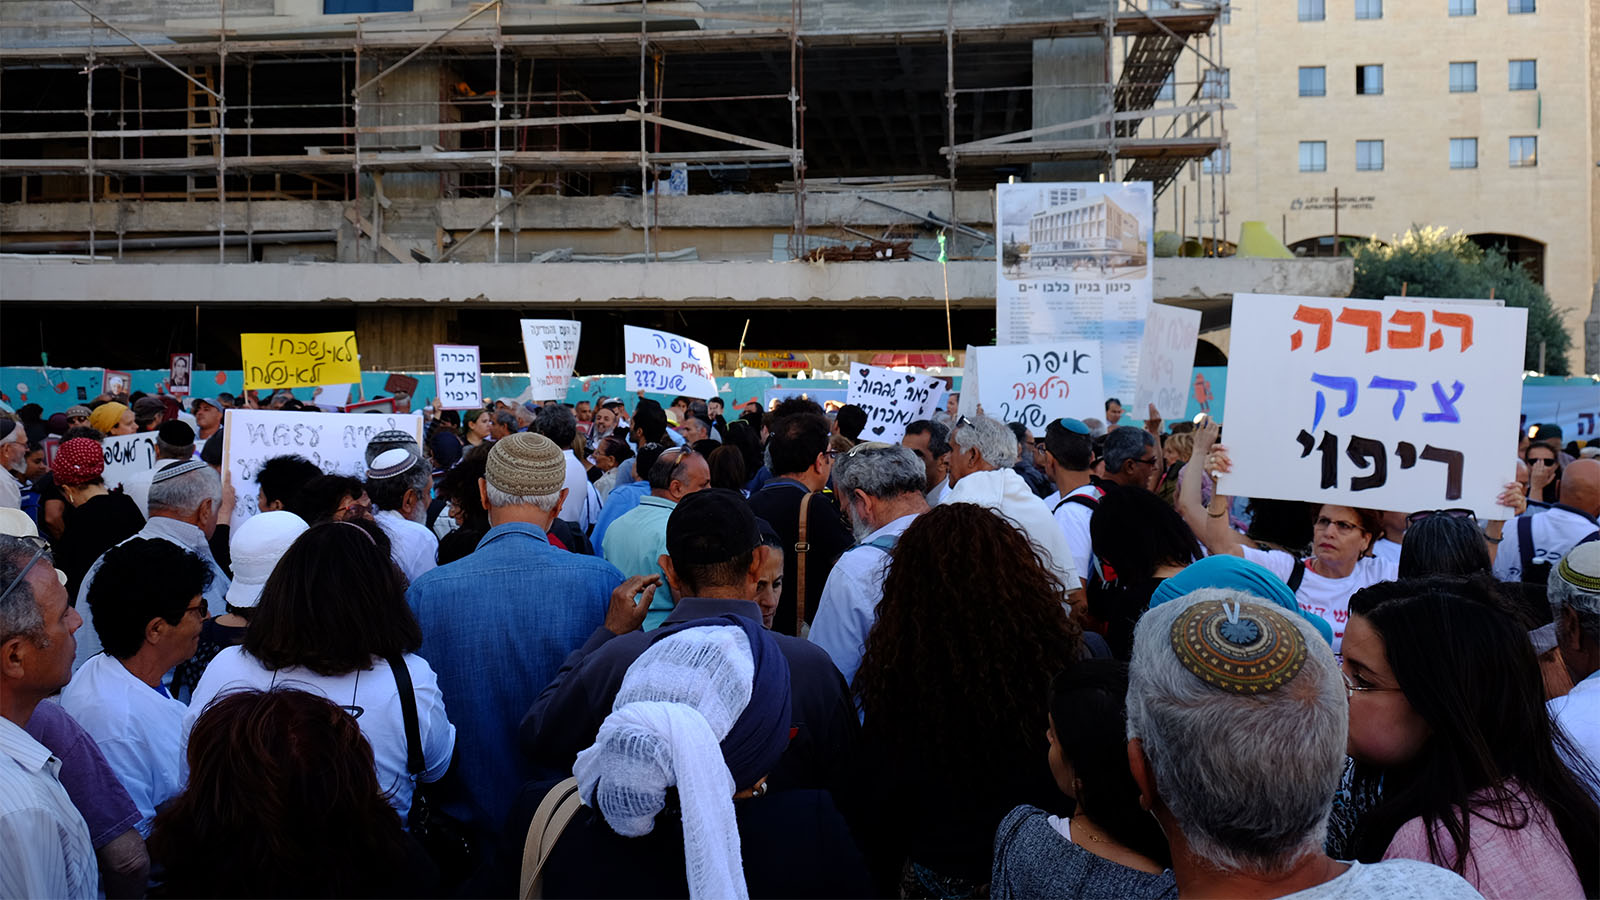 הפגנה לבירור פרשת חטיפת ילדי תימן, המזרח והבלקן בירושלים (צילום: דוד טברסקי)